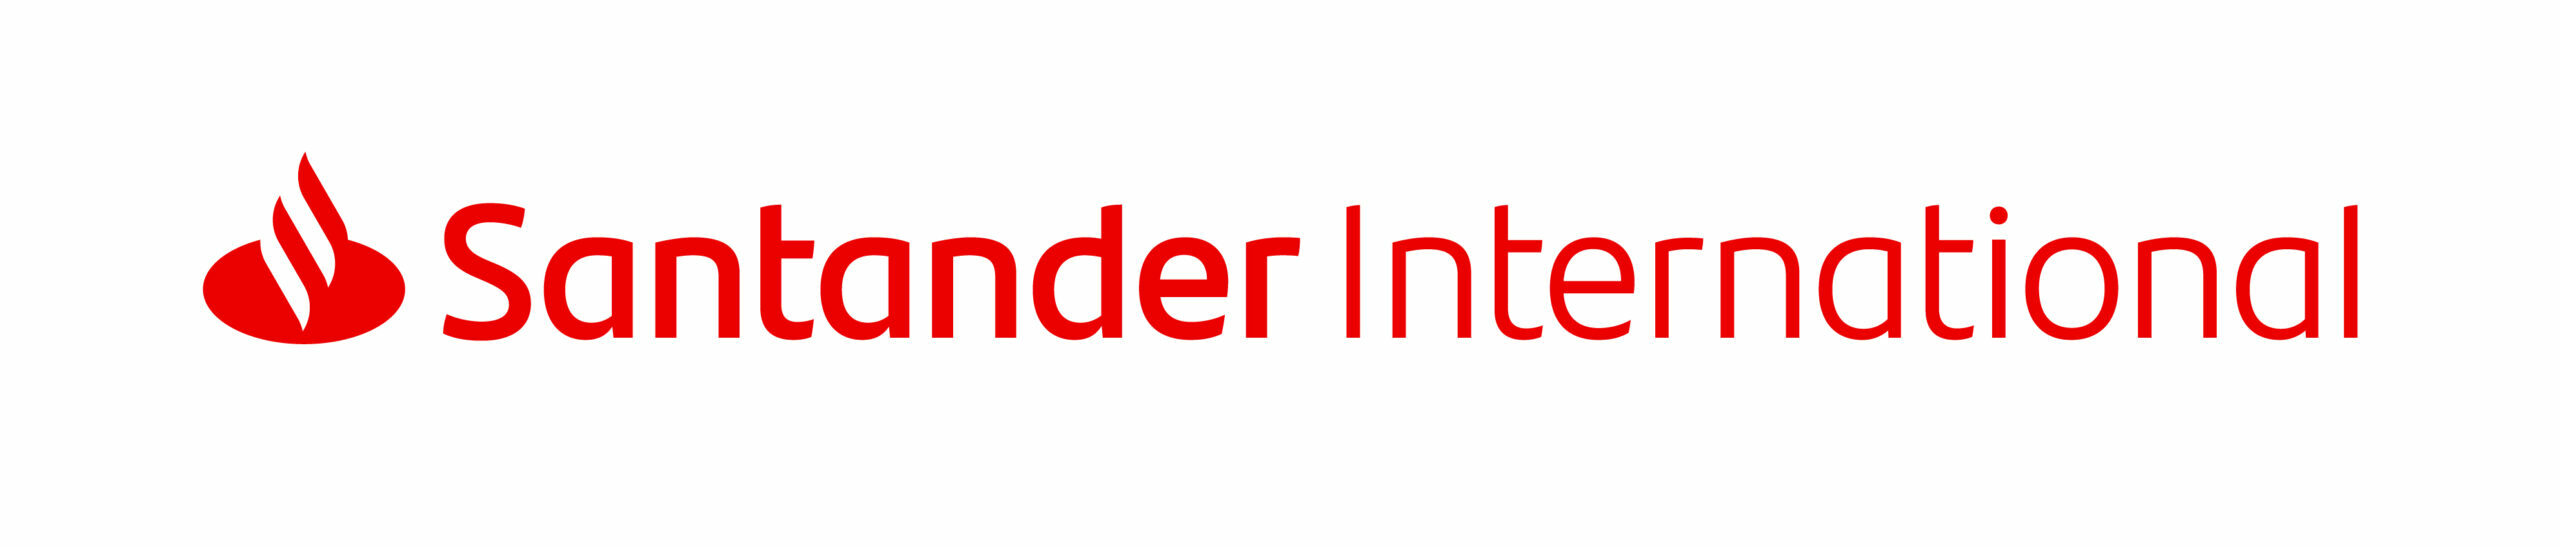 Santander International logo